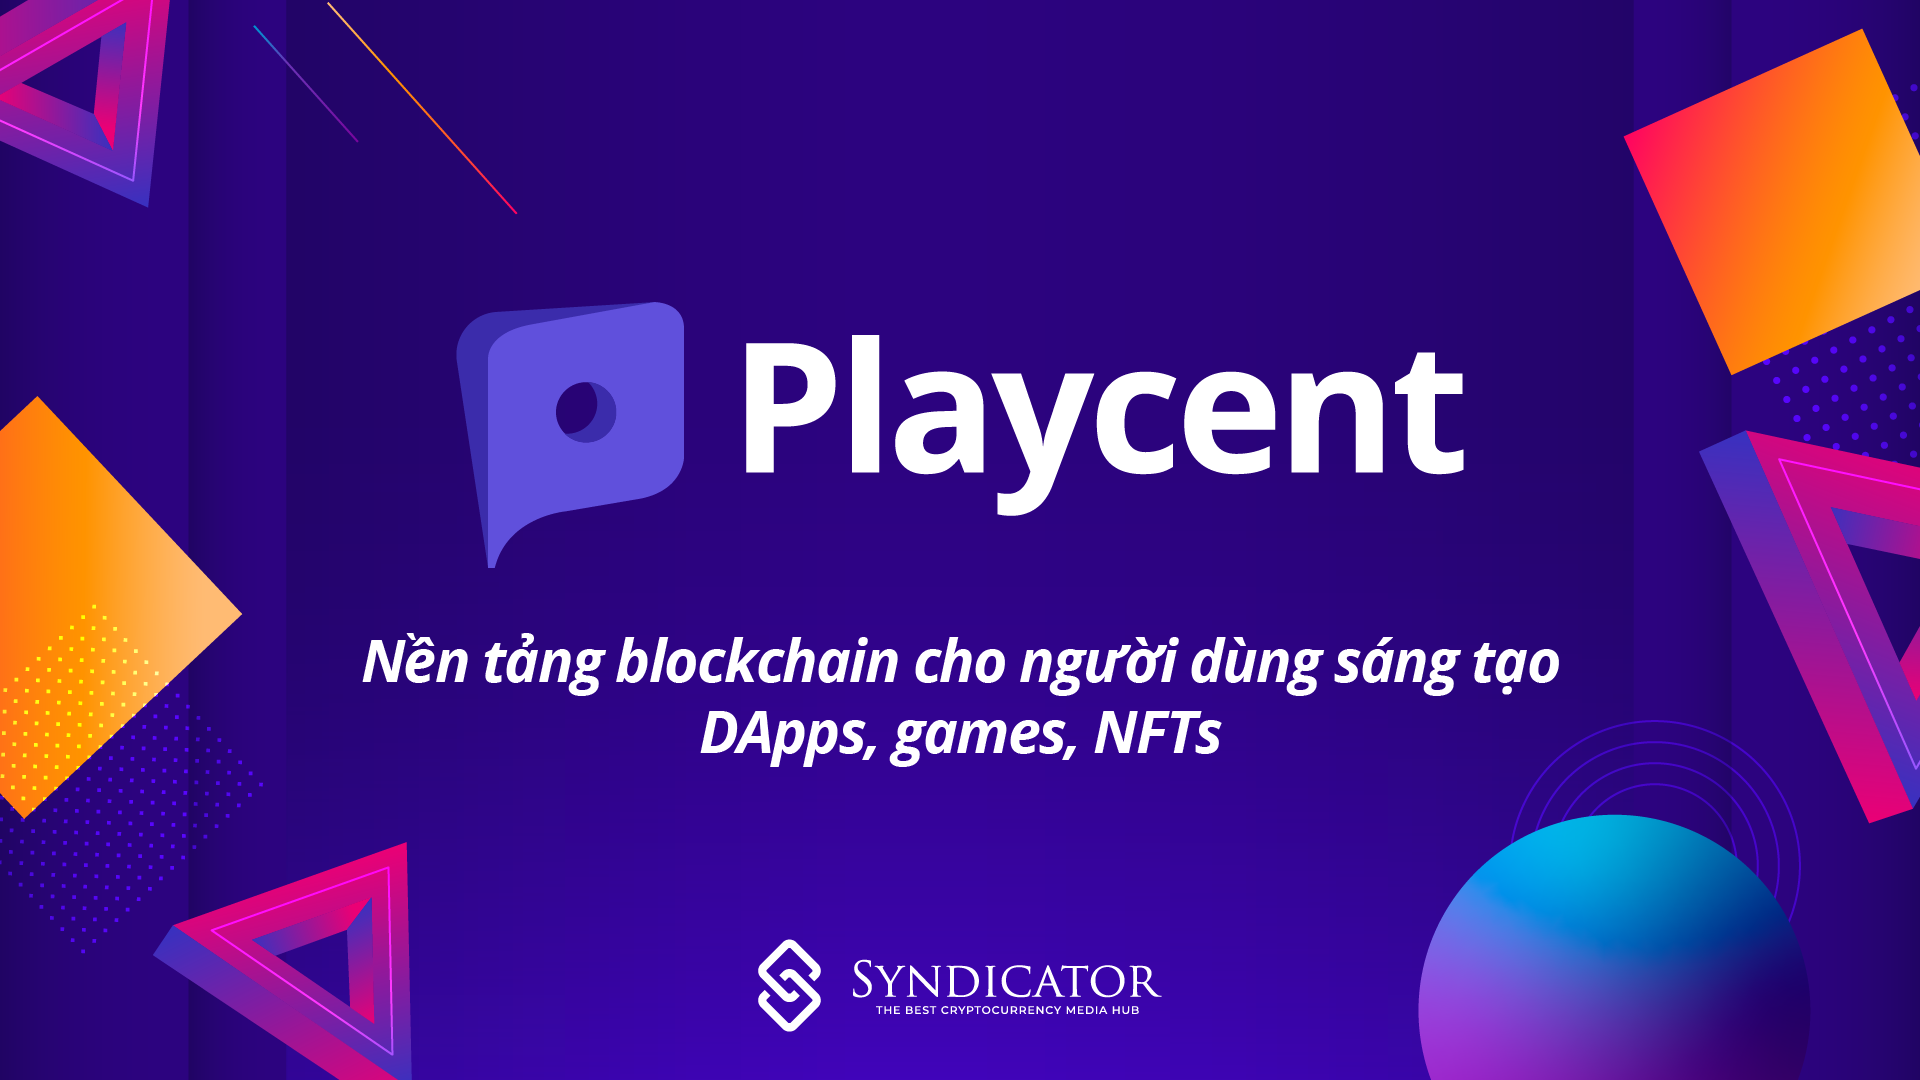 Playcent: Nền tảng blockchain cho người dùng sáng tạo DApps, games, NFTs | Syndicator